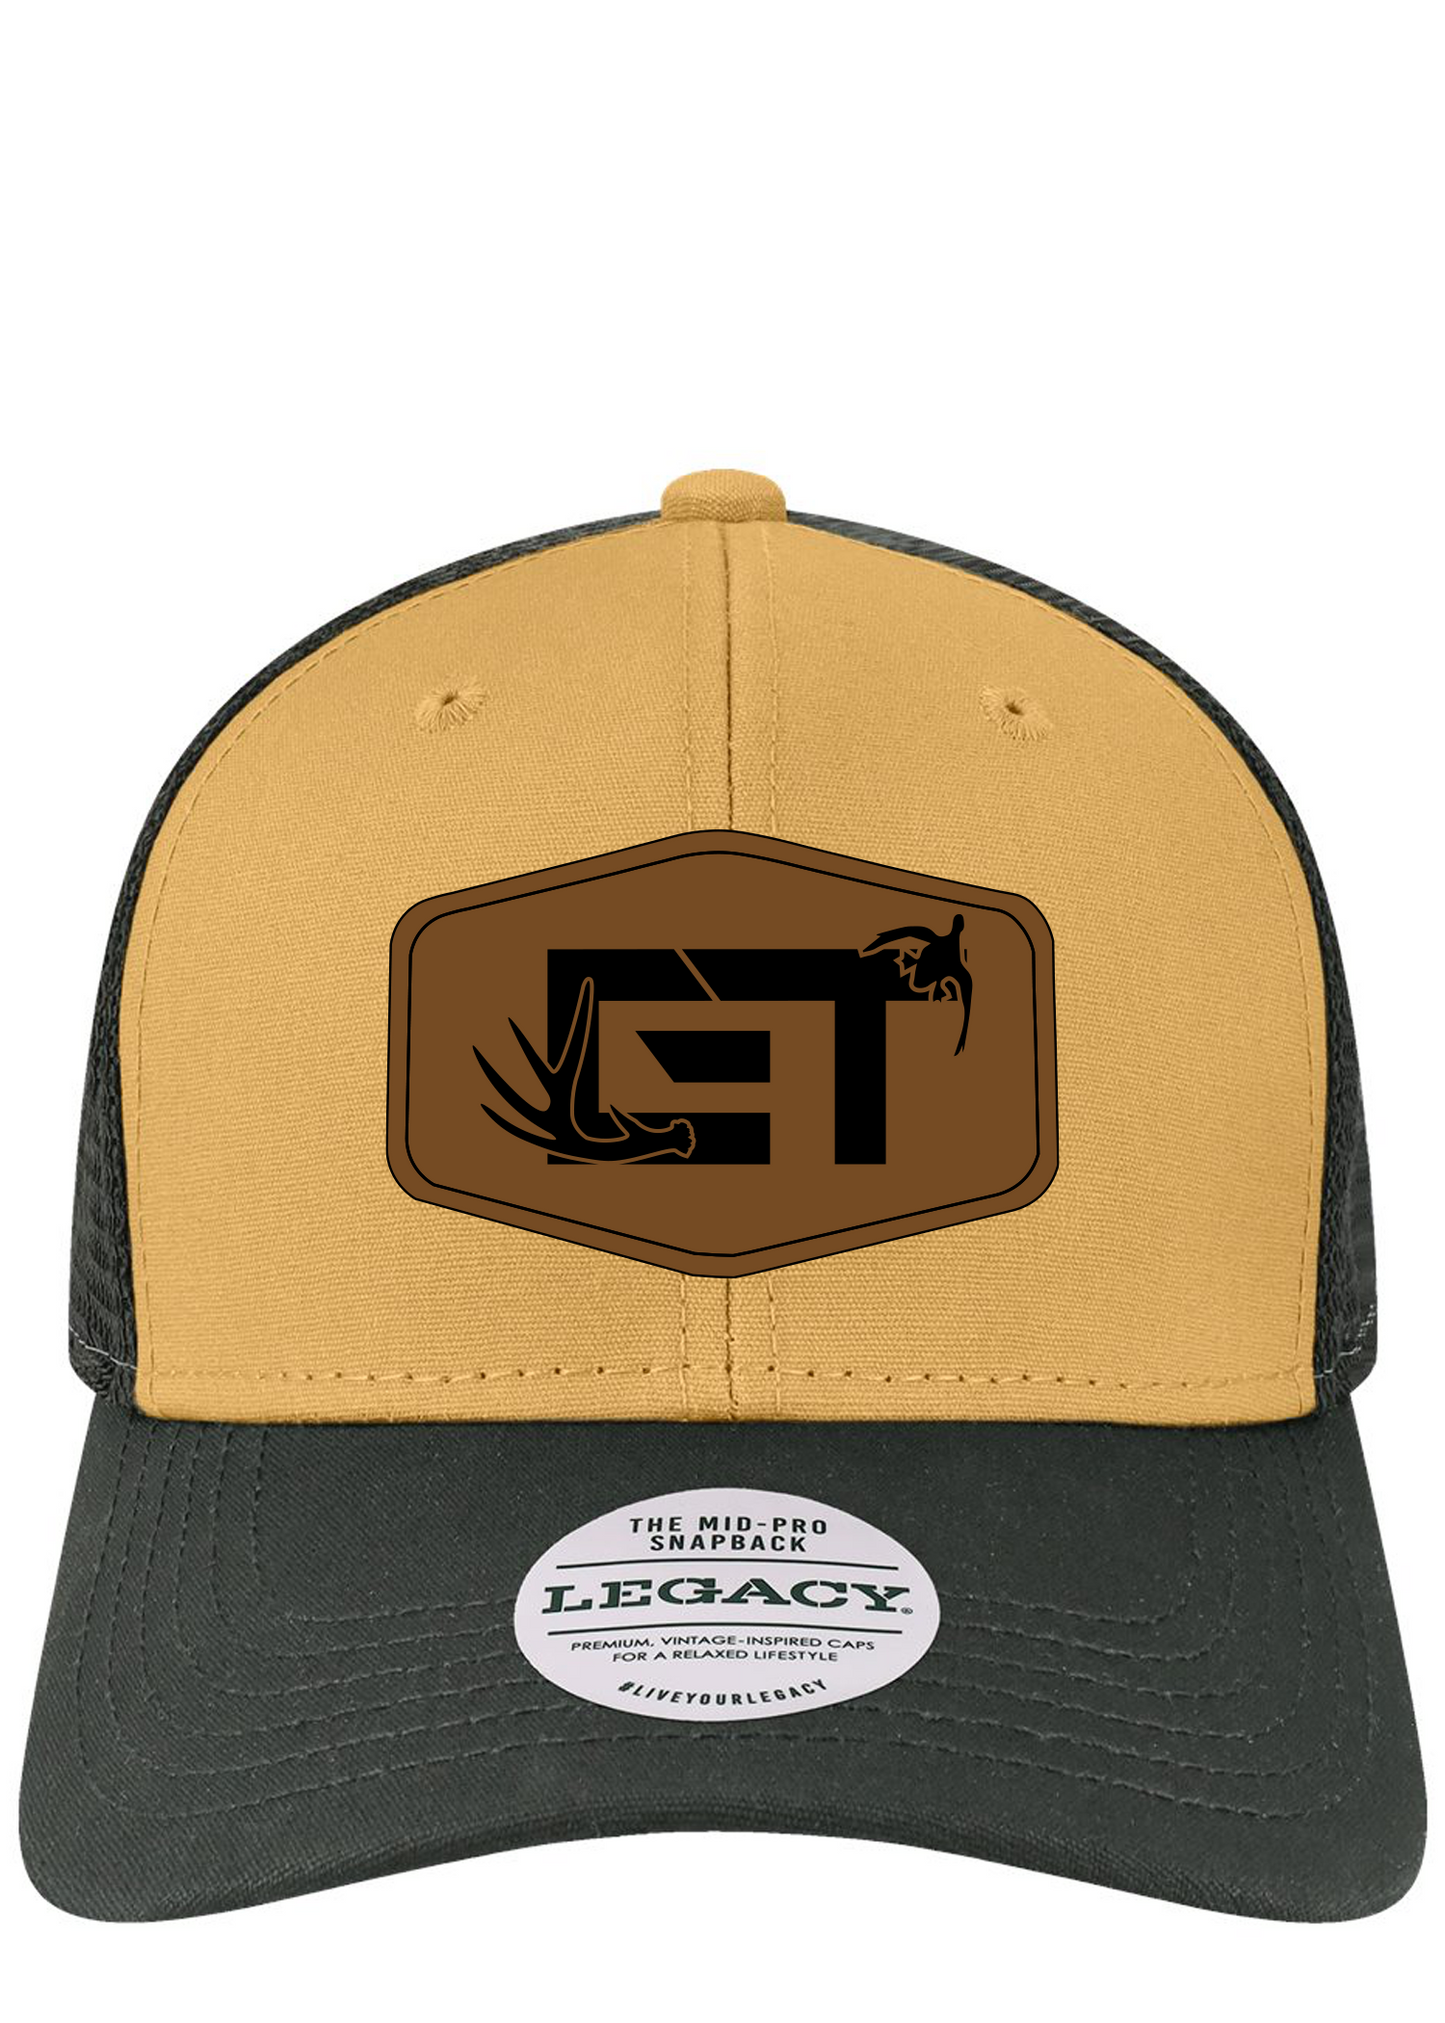 ET Legacy Trucker hat